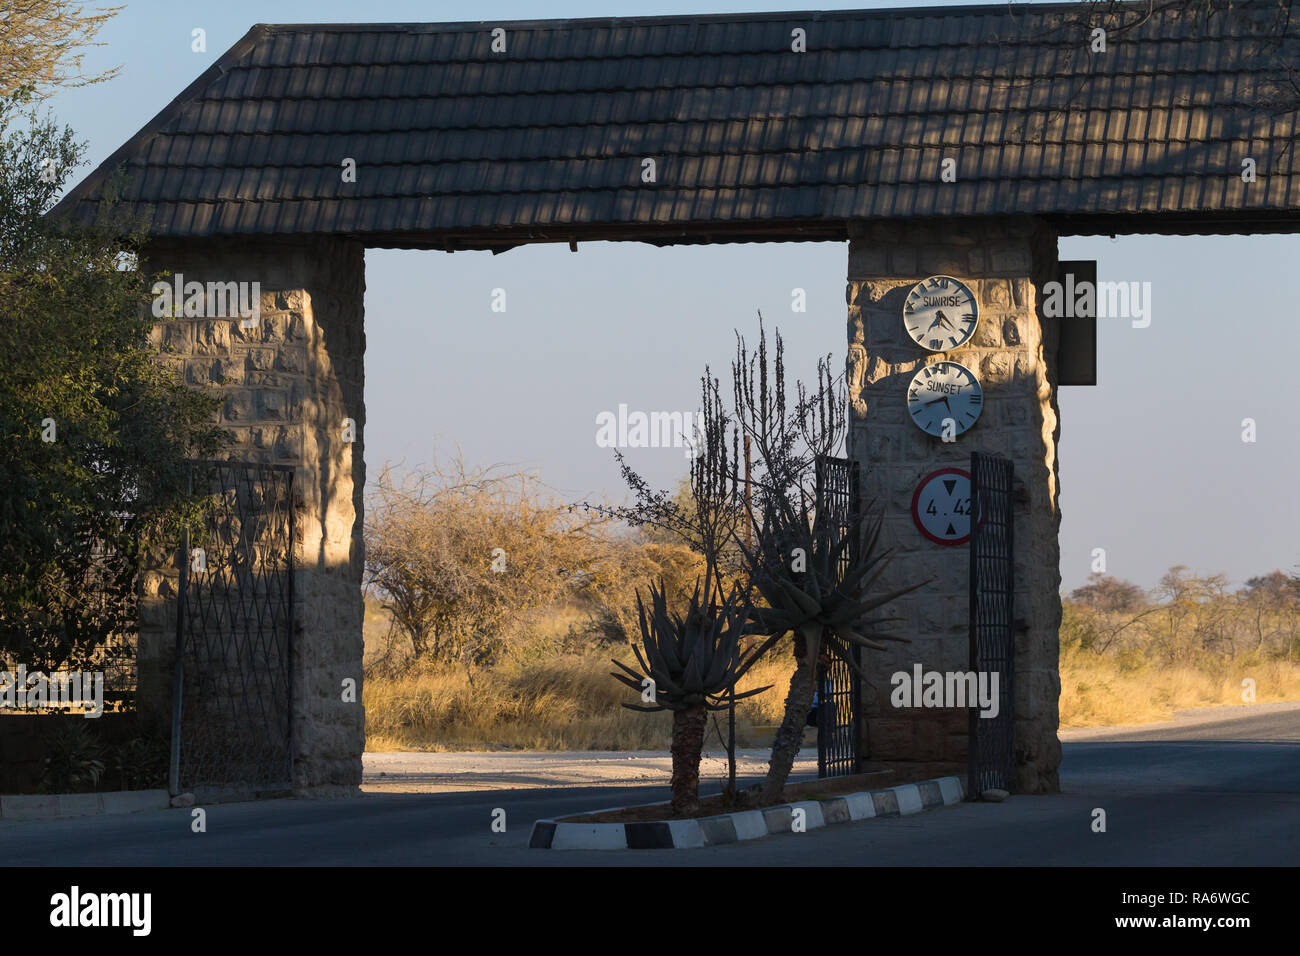 Okaukuejo rest camp gate open et donner les périodes de fermeture et ouverture sur une horloge sur le mur de pierre dans le parc national d'Etosha, Namibie Banque D'Images